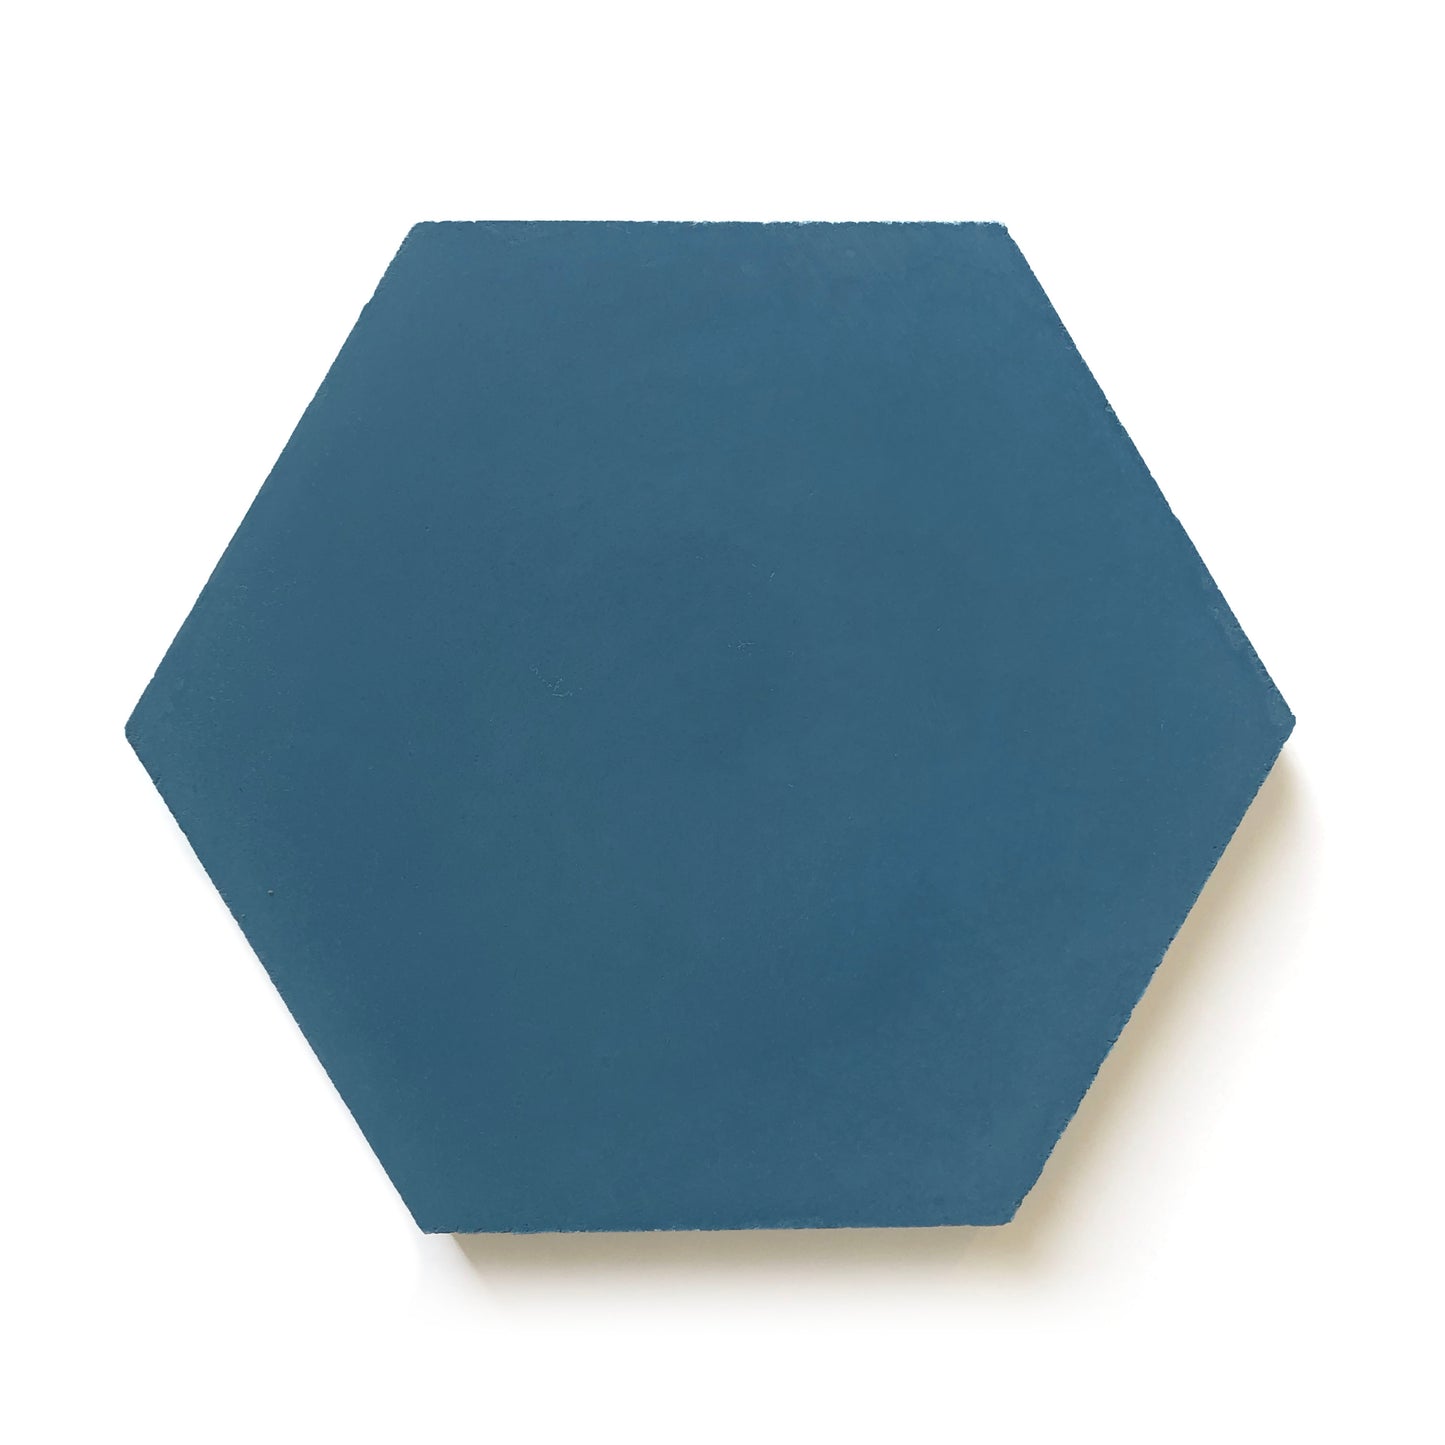 Original Mission Tile | 8x9 in Hex Tile - Blue - S912